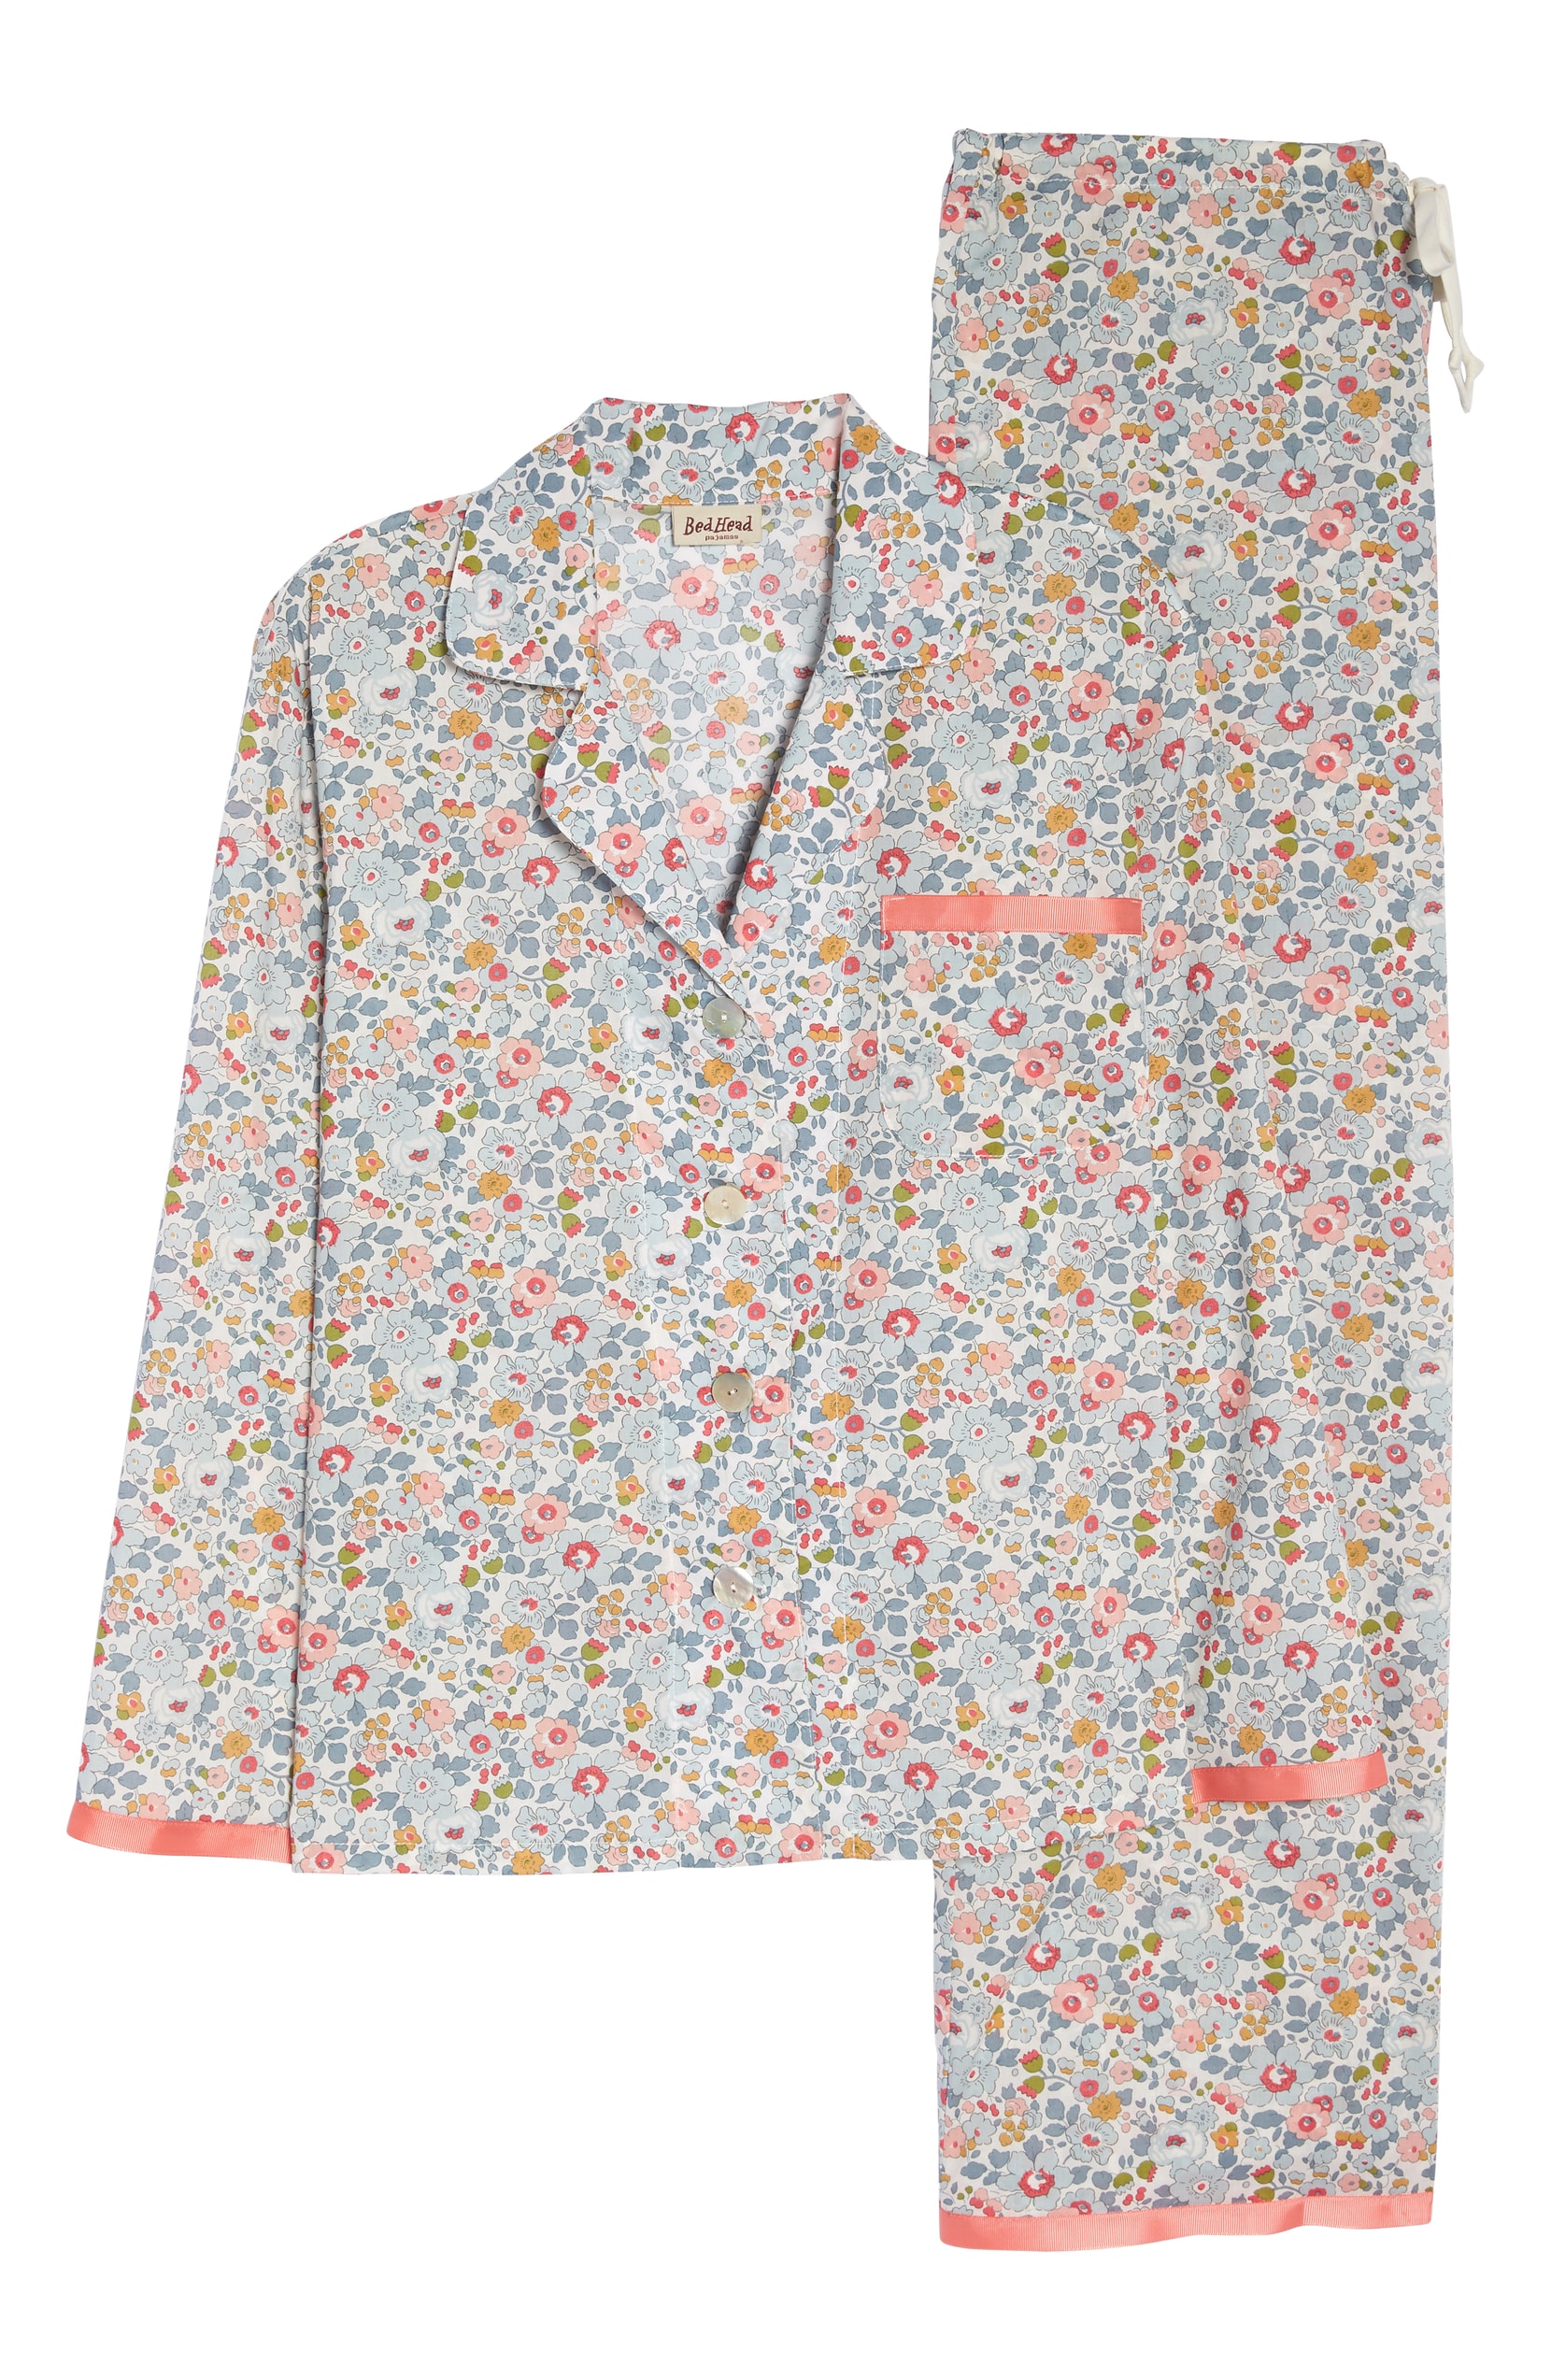 Liberty London Floral Pajama Set